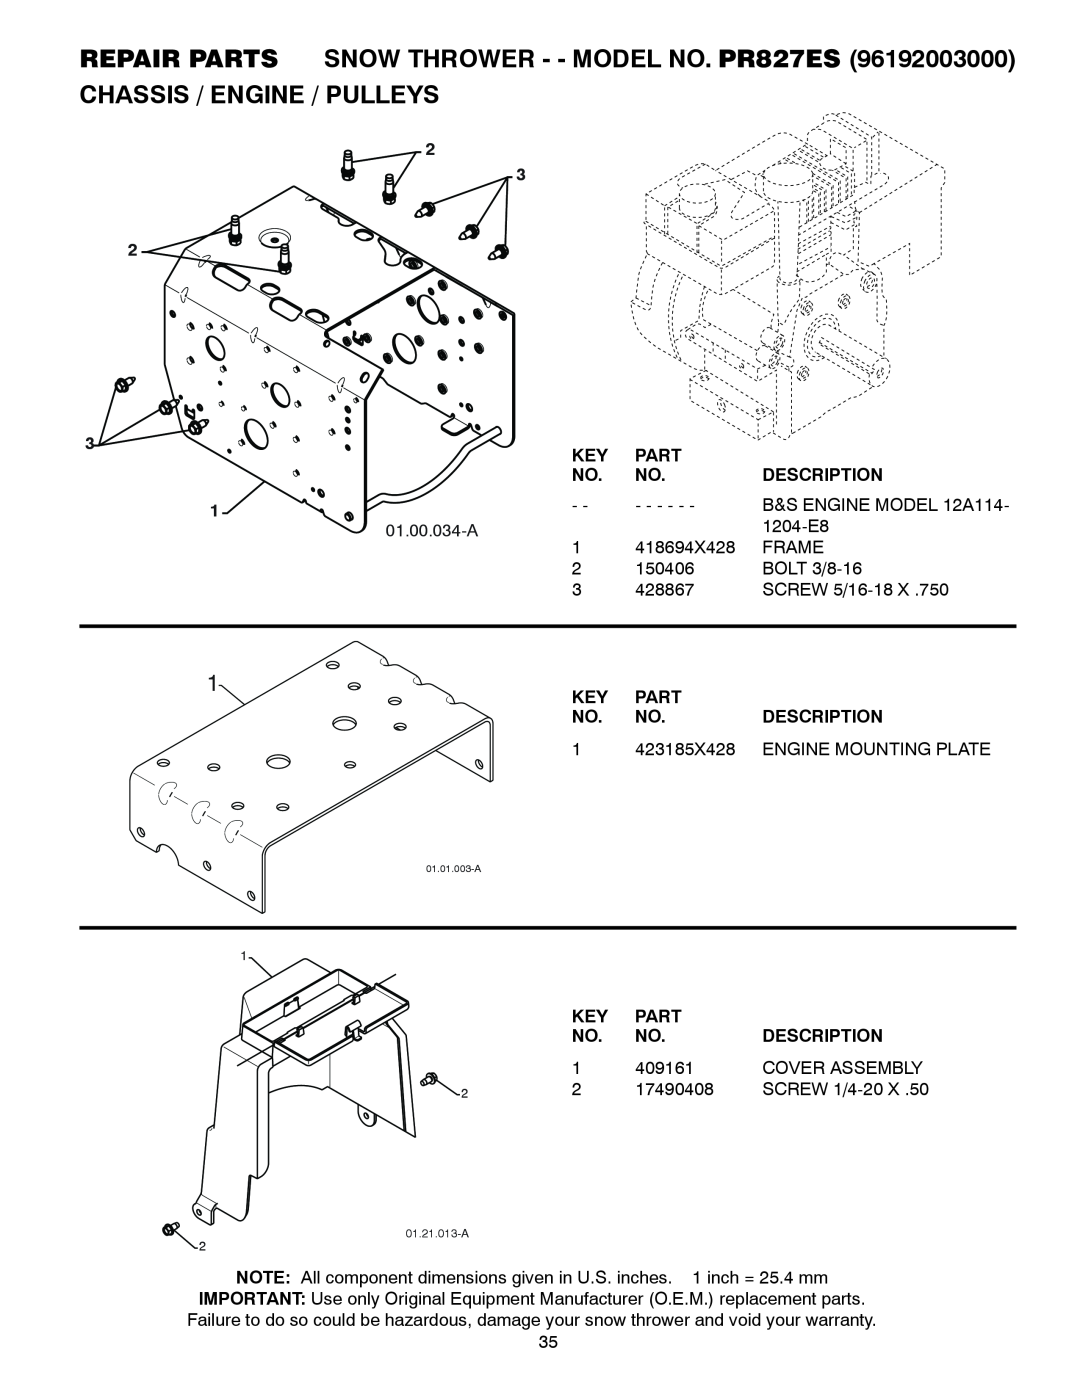 Poulan Chassis / Engine / Pulleys, REPAIR PARTS SNOW THROWER - - MODEL NO. PR827ES, Part, Description, 423185X428 